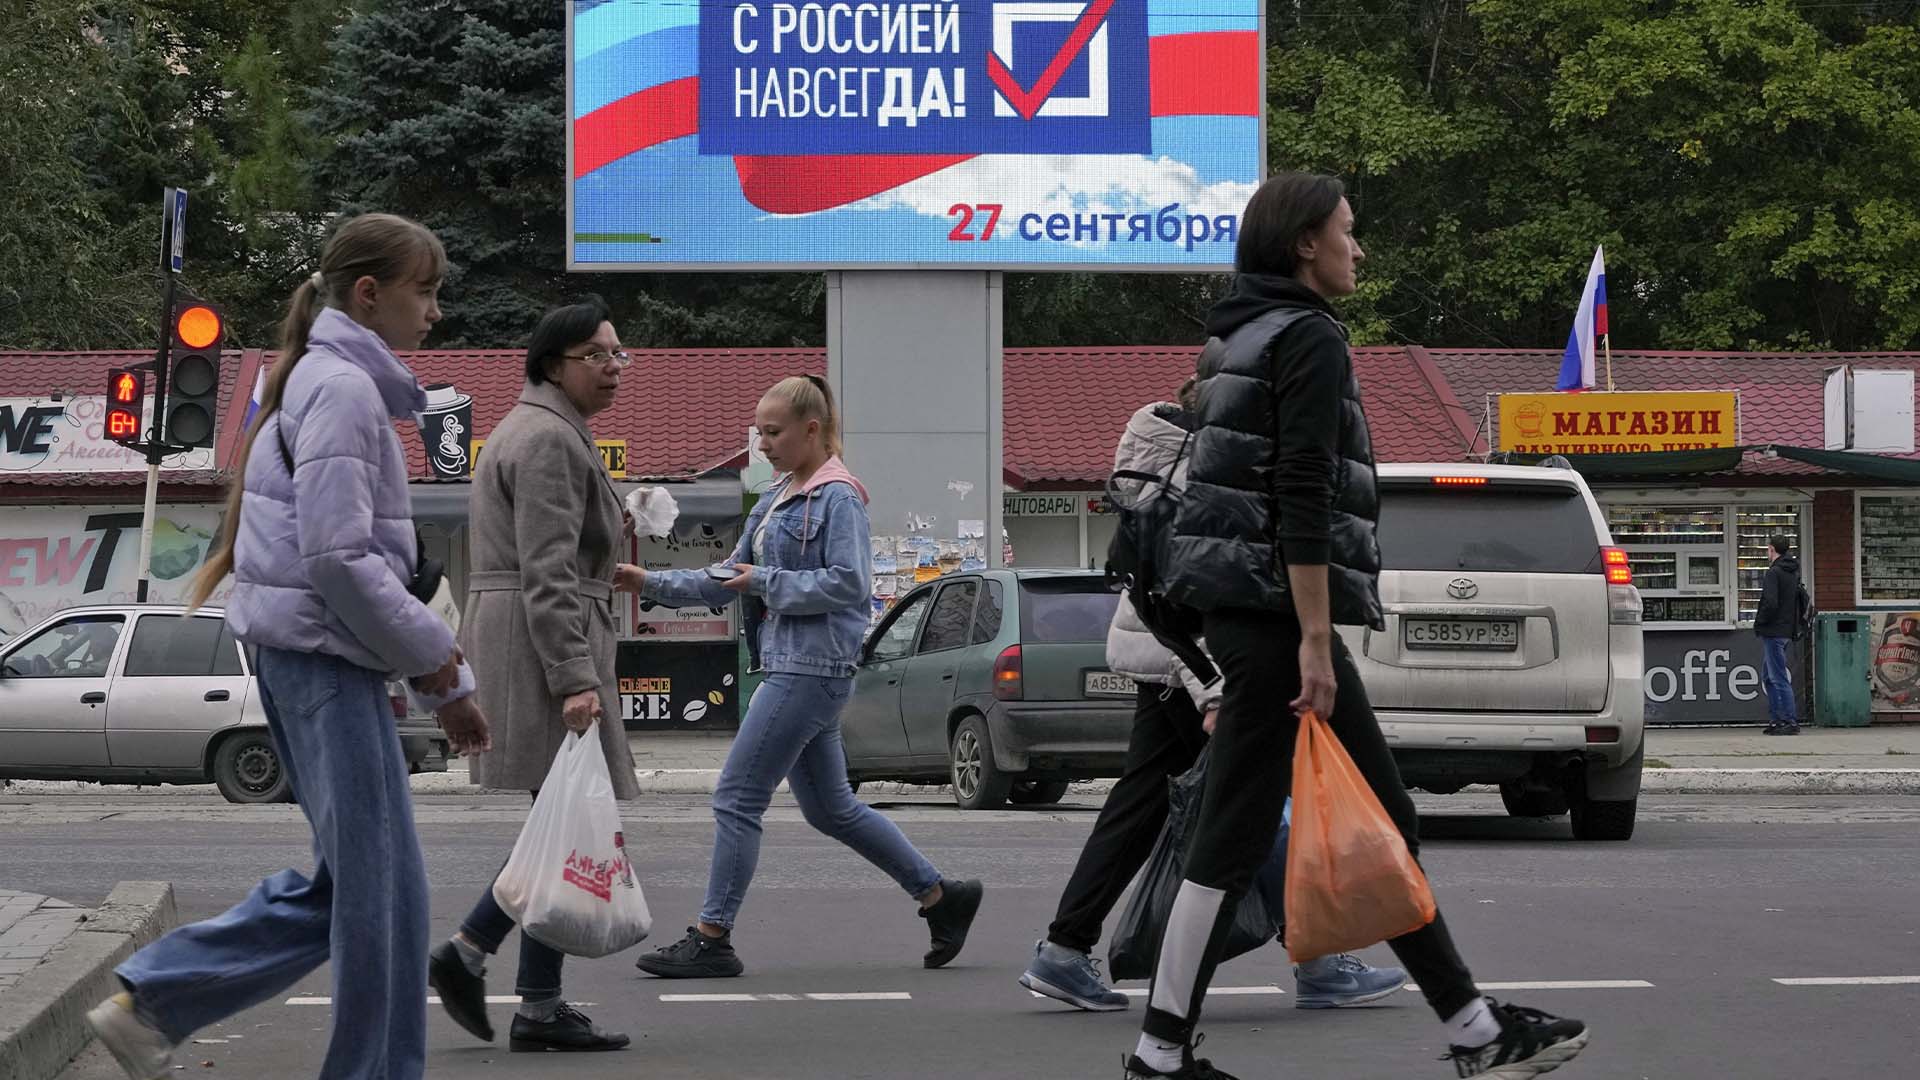 Des gens passent devant un panneau d'affichage indiquant «Pour toujours avec la Russie» à Louhansk, dans la République populaire de Lougansk contrôlée par des séparatistes soutenus par la Russie, dans l'est de l'Ukraine, le mardi 27 septembre 2022.